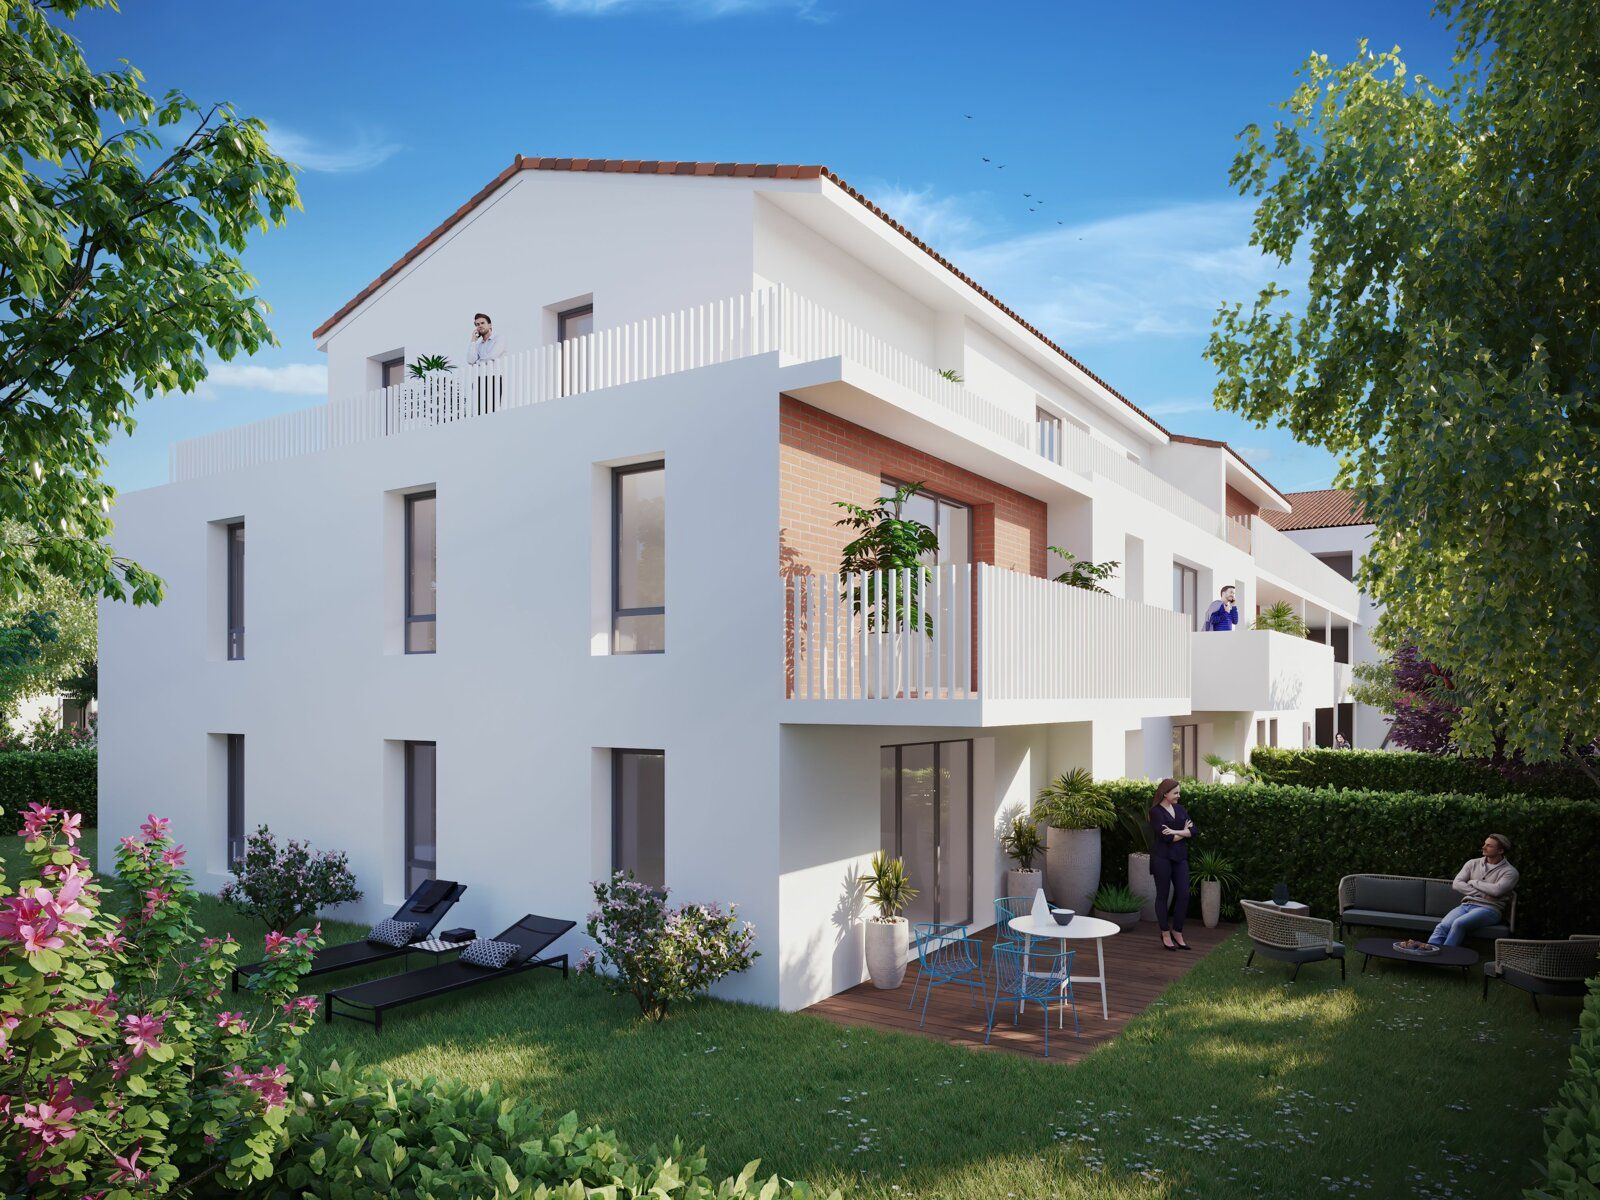 Appartement à vendre 3 62m2 à Toulouse vignette-4